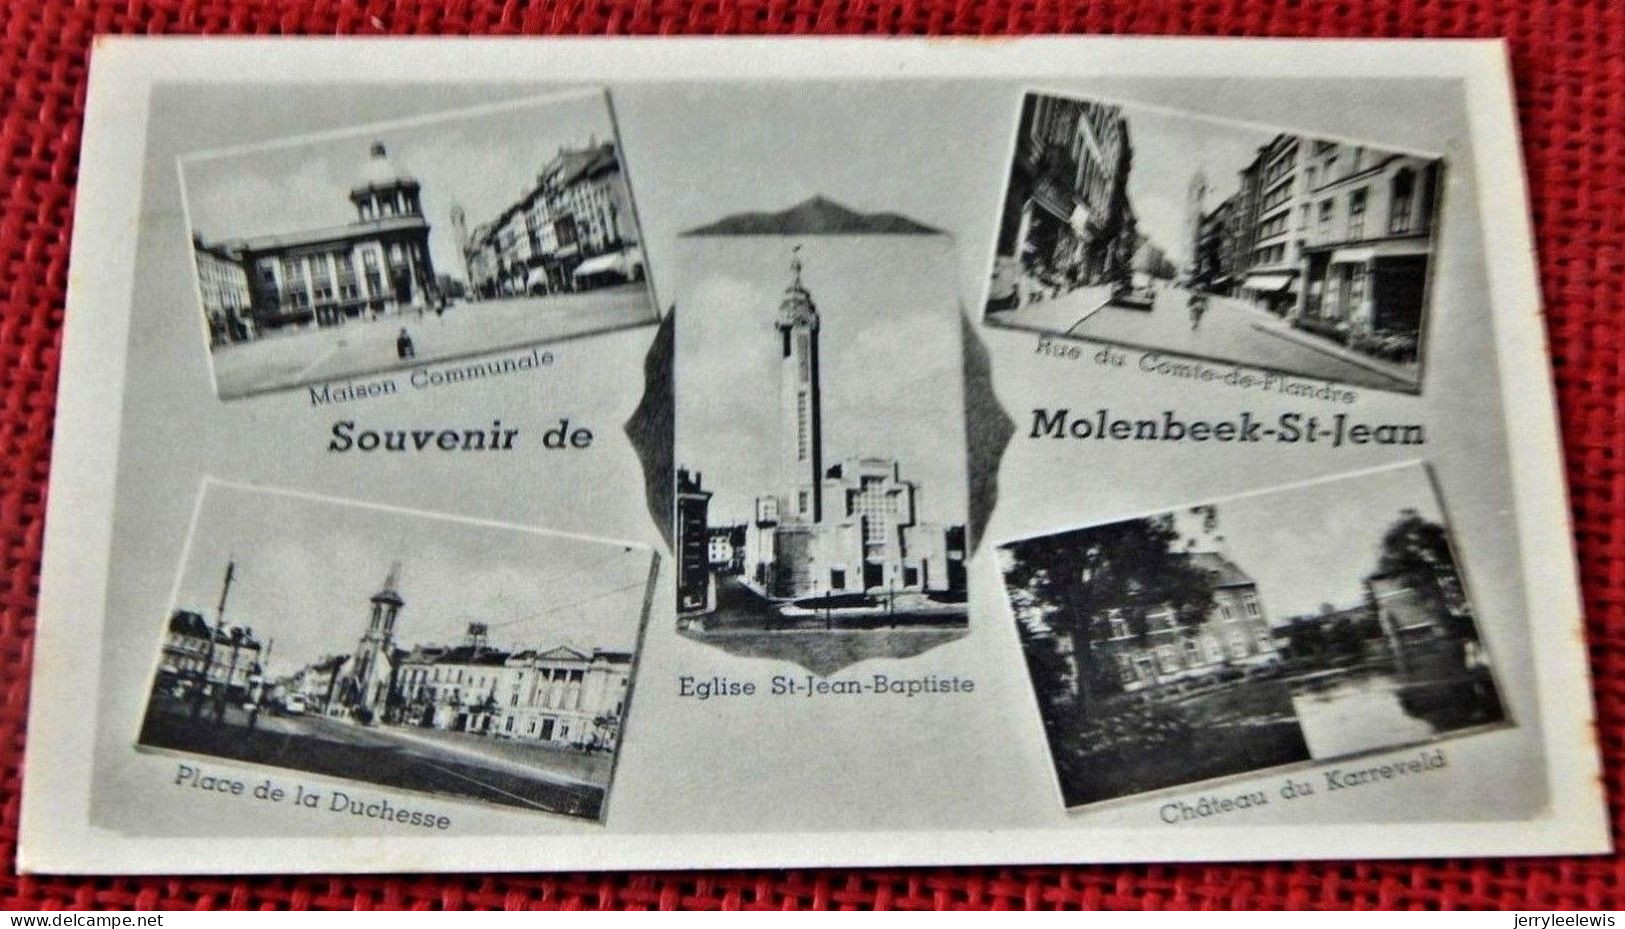 MOLENBEEK-St-JEAN  - St-JANS-MOLENBEEK  -  Souvenir De Molenbeek St Jean - Molenbeek-St-Jean - St-Jans-Molenbeek